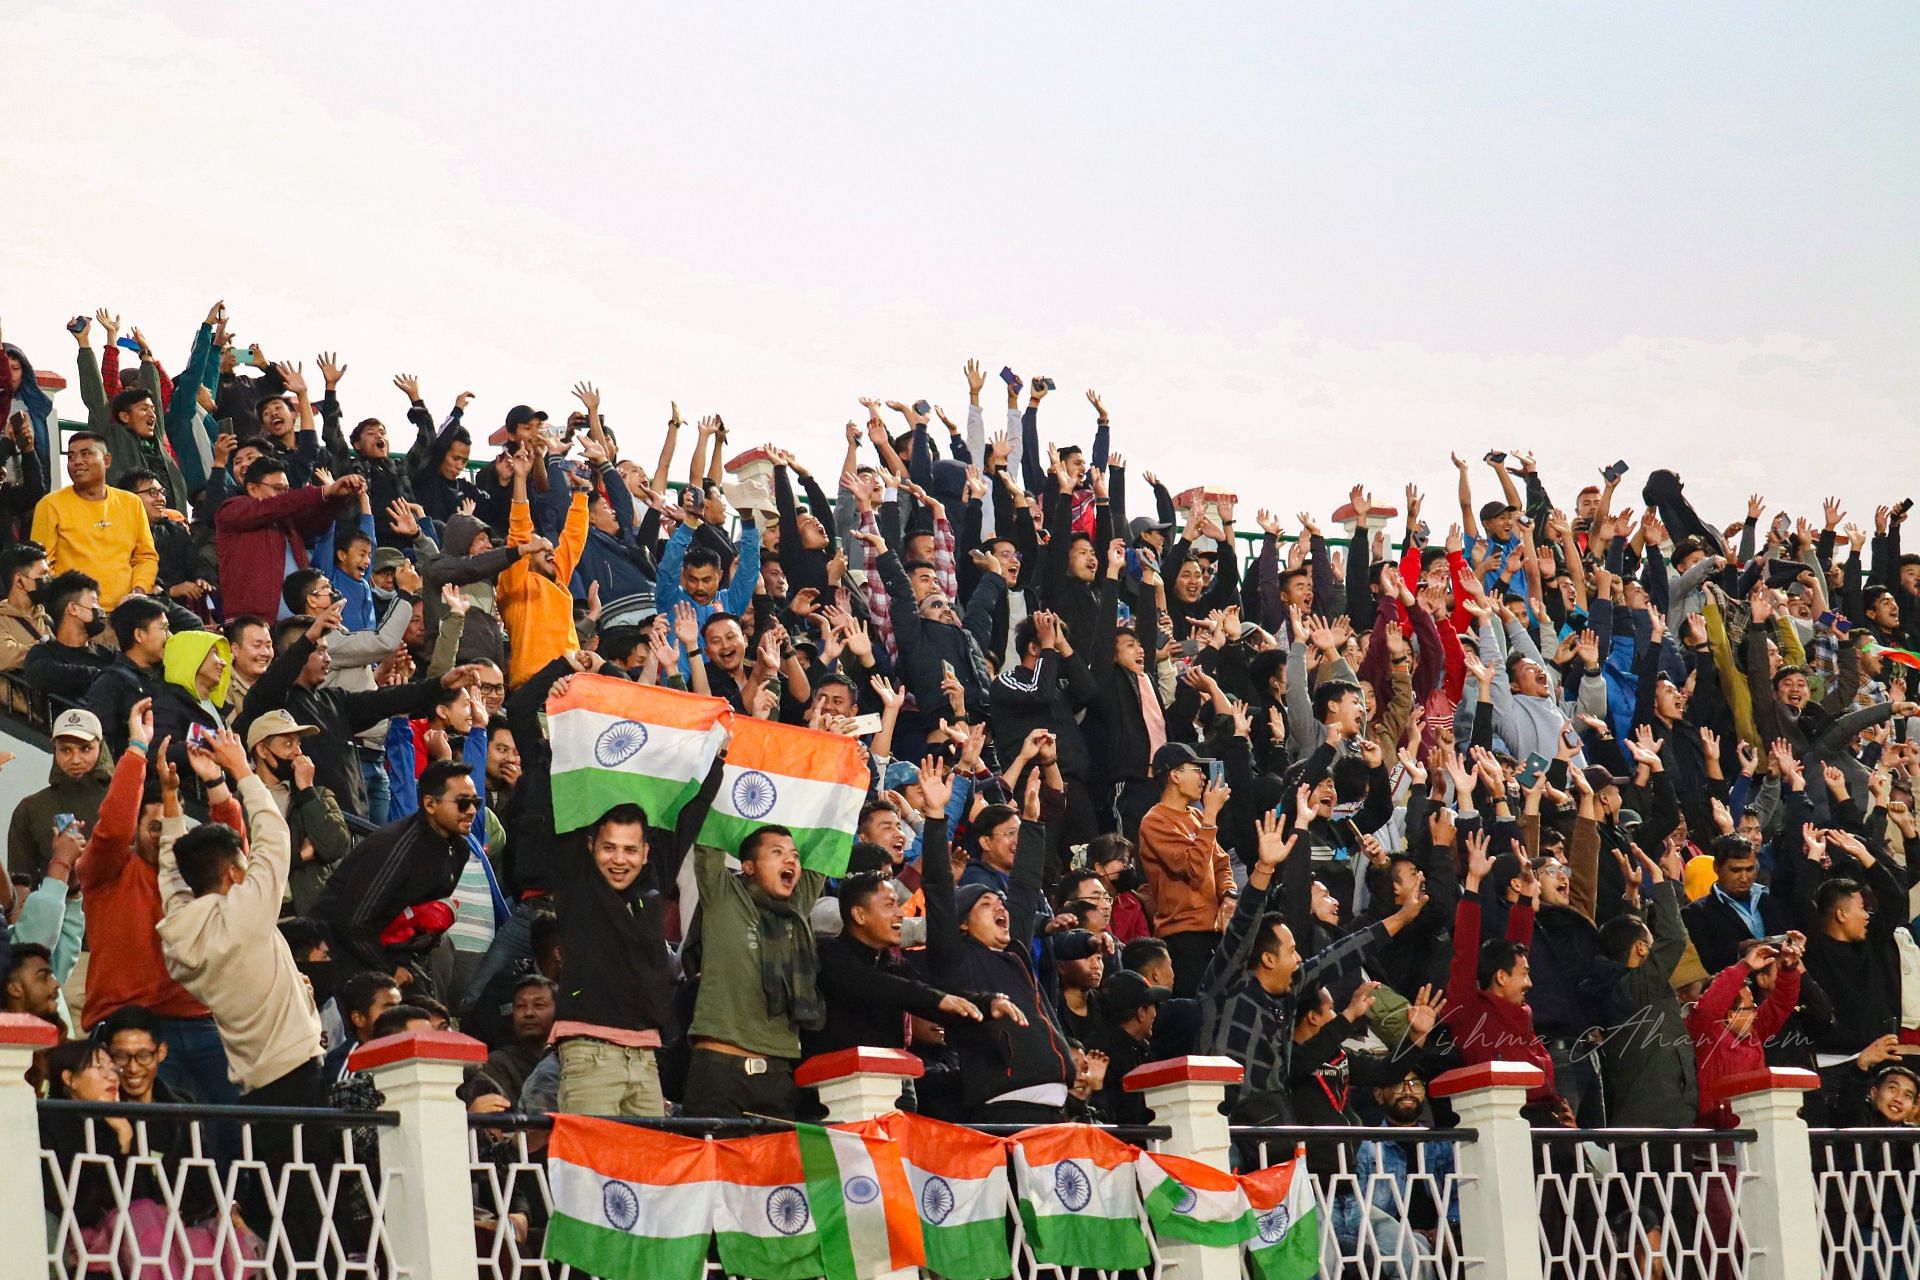 मणिपुर में पहली बार हो रहे किसी अंतर्राष्ट्रीय मैच को देखने के लिए दर्शक भारी तादाद में मौजूद थे।